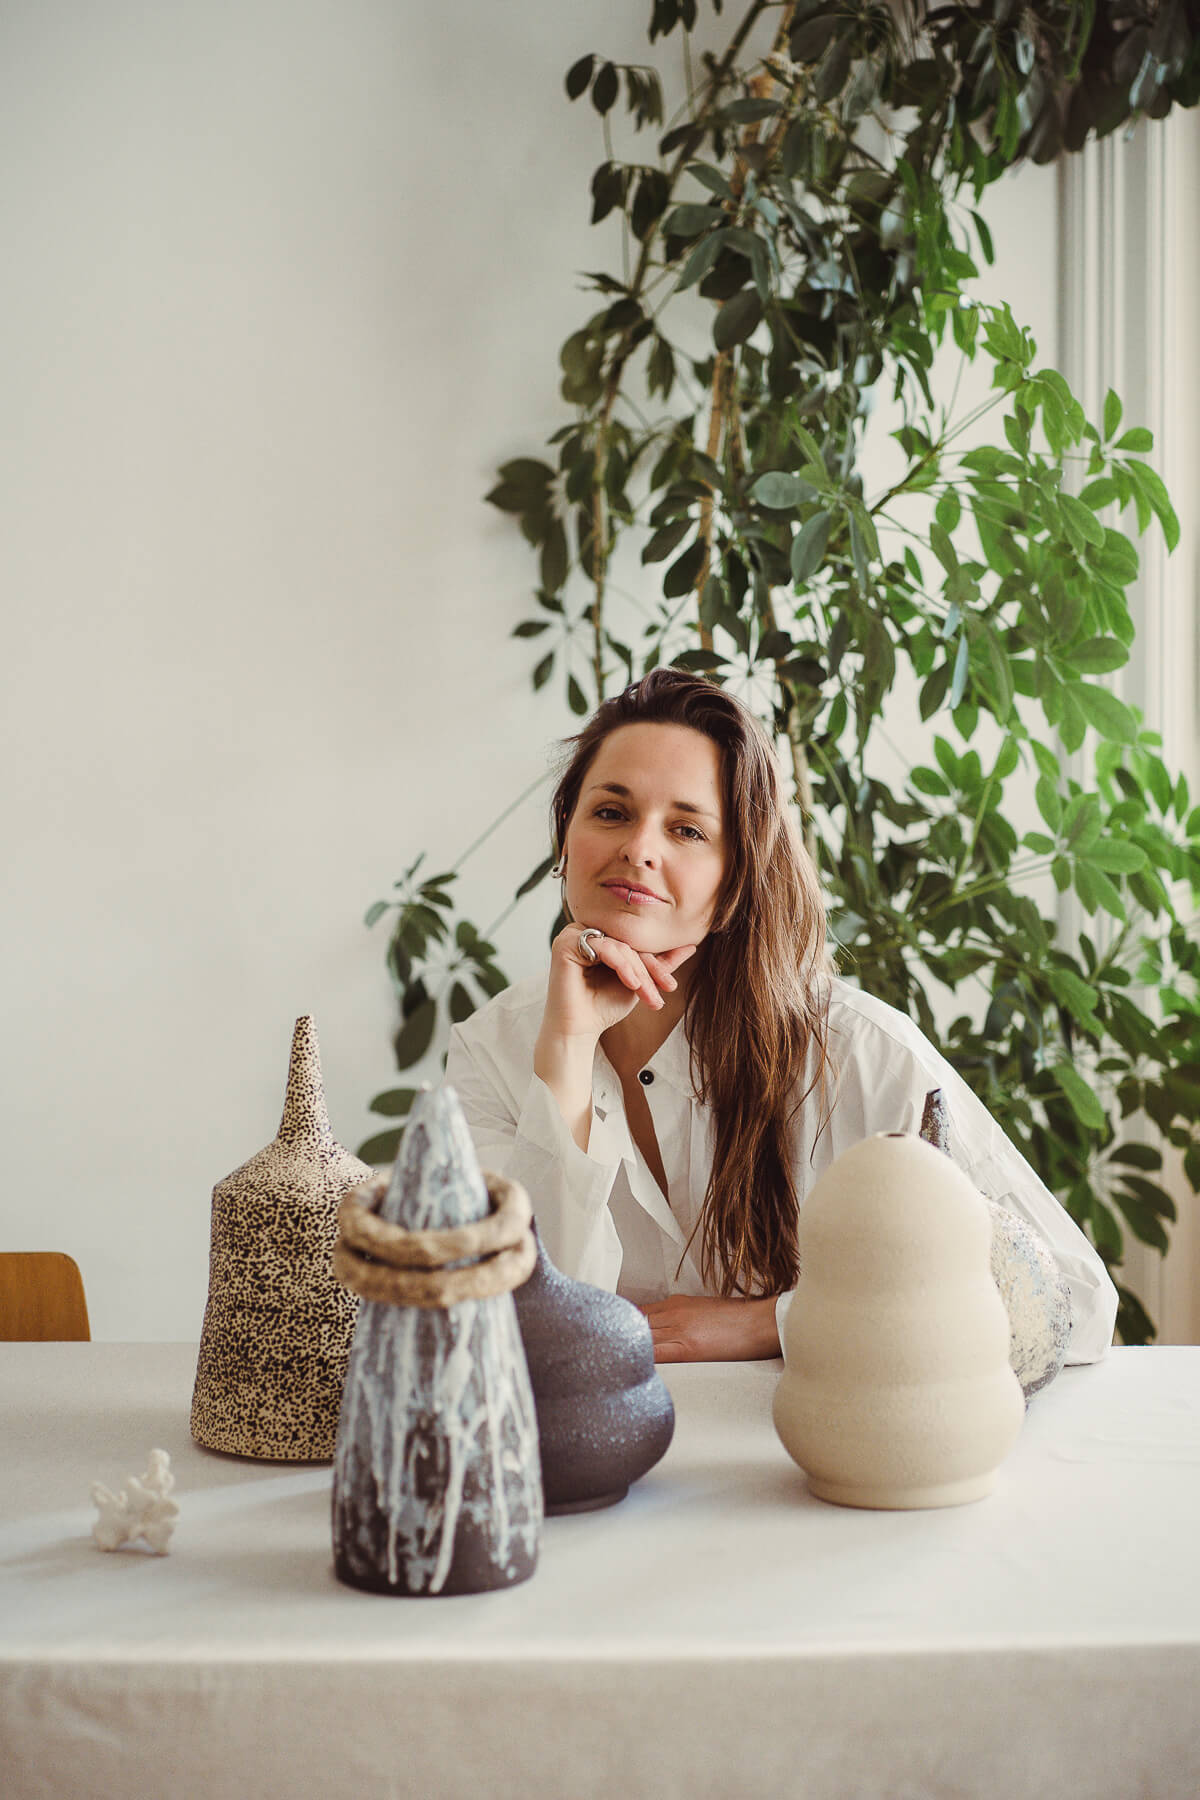 Evgeniia Kazarezova — Zheni studio Keramik Vase Keramikkunst – diesellerie.com